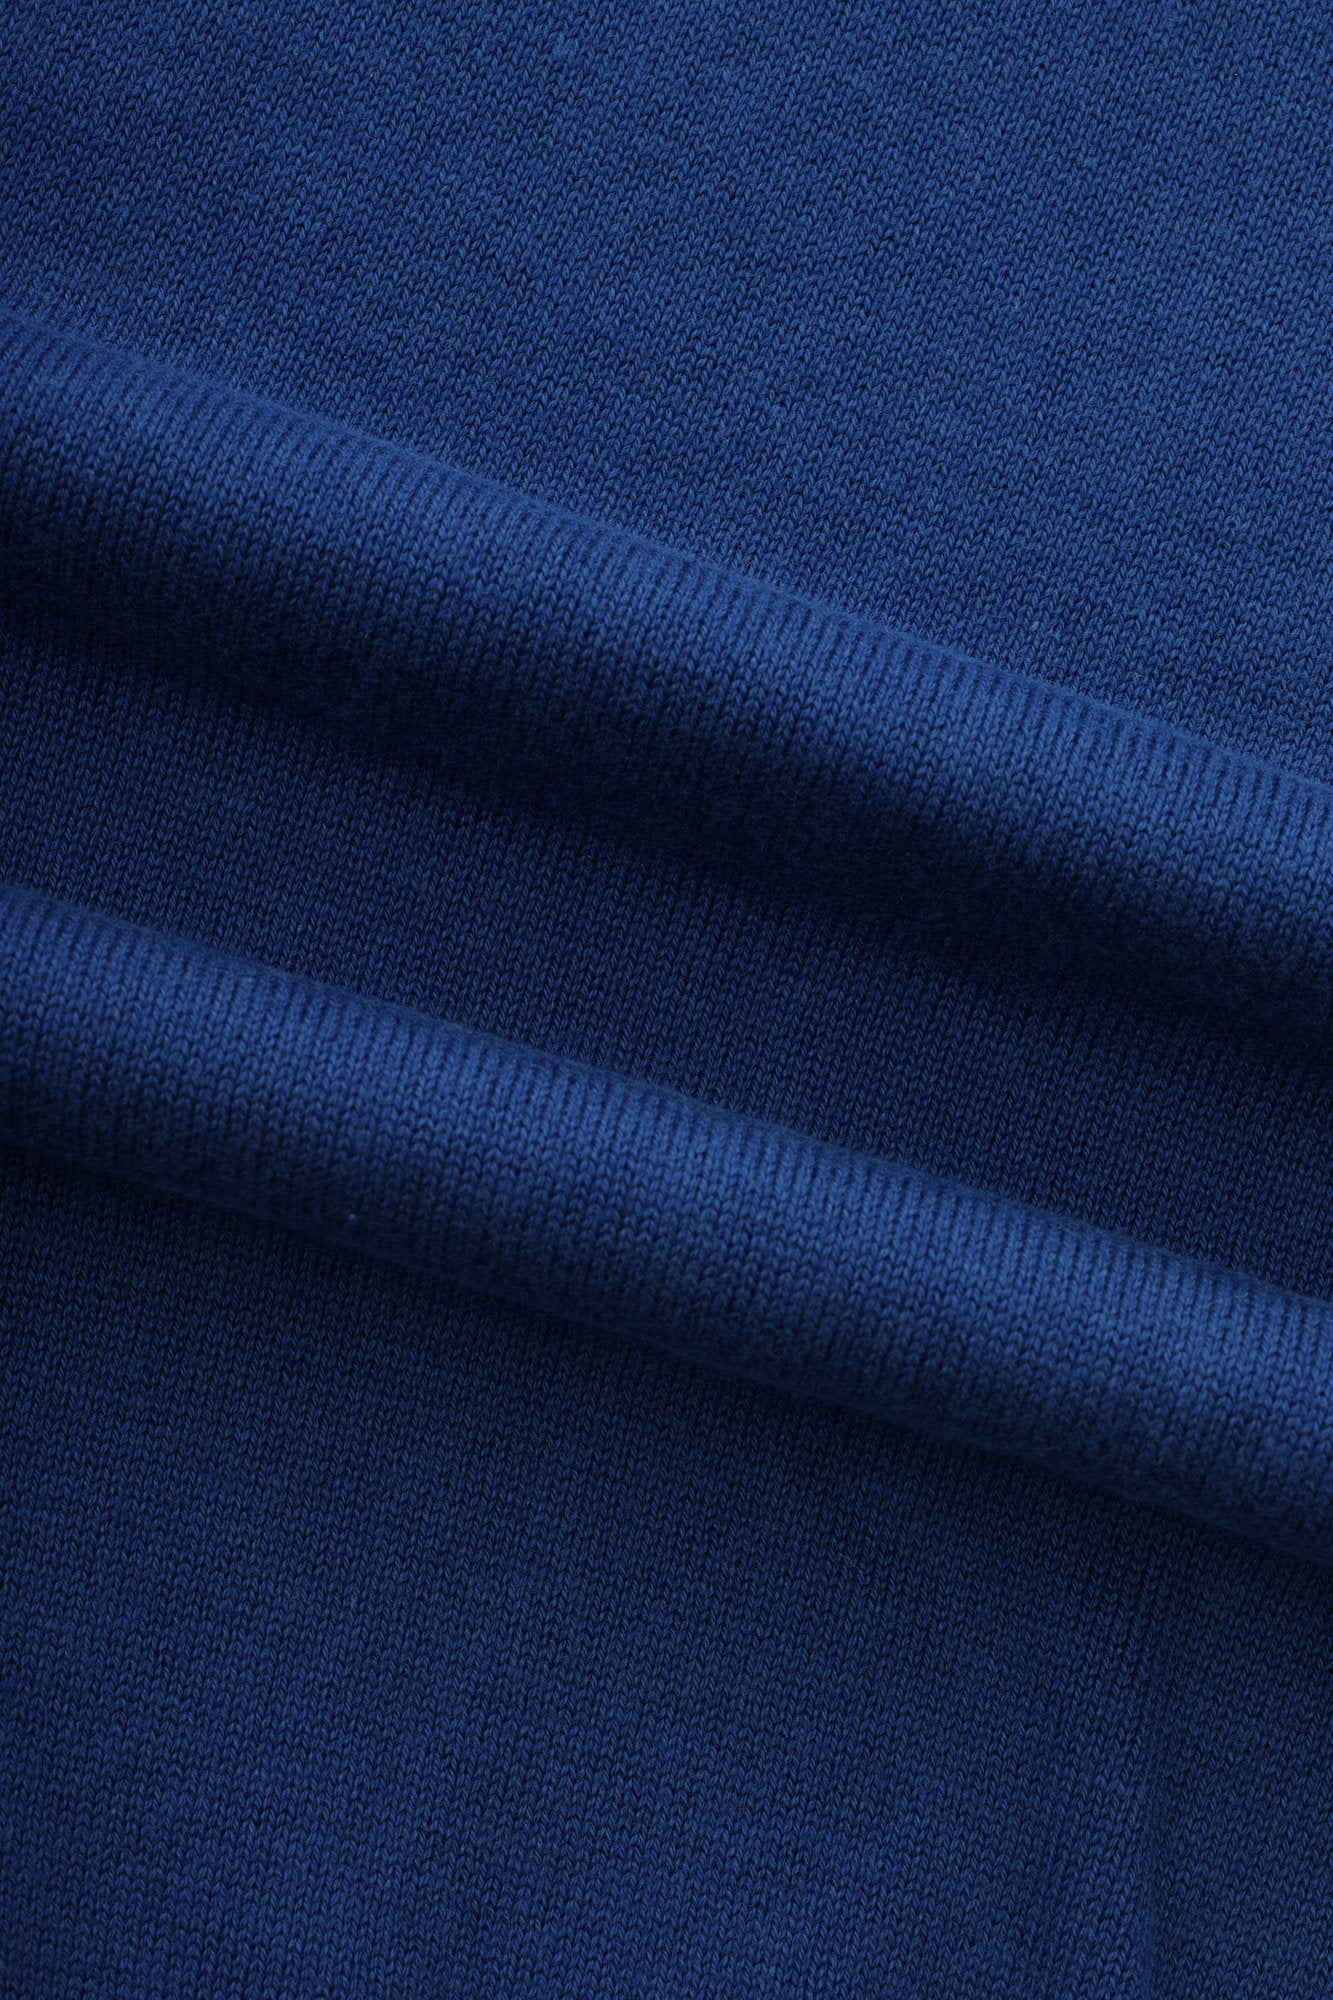 Plain Basic Marian Blue V Neck Pullover